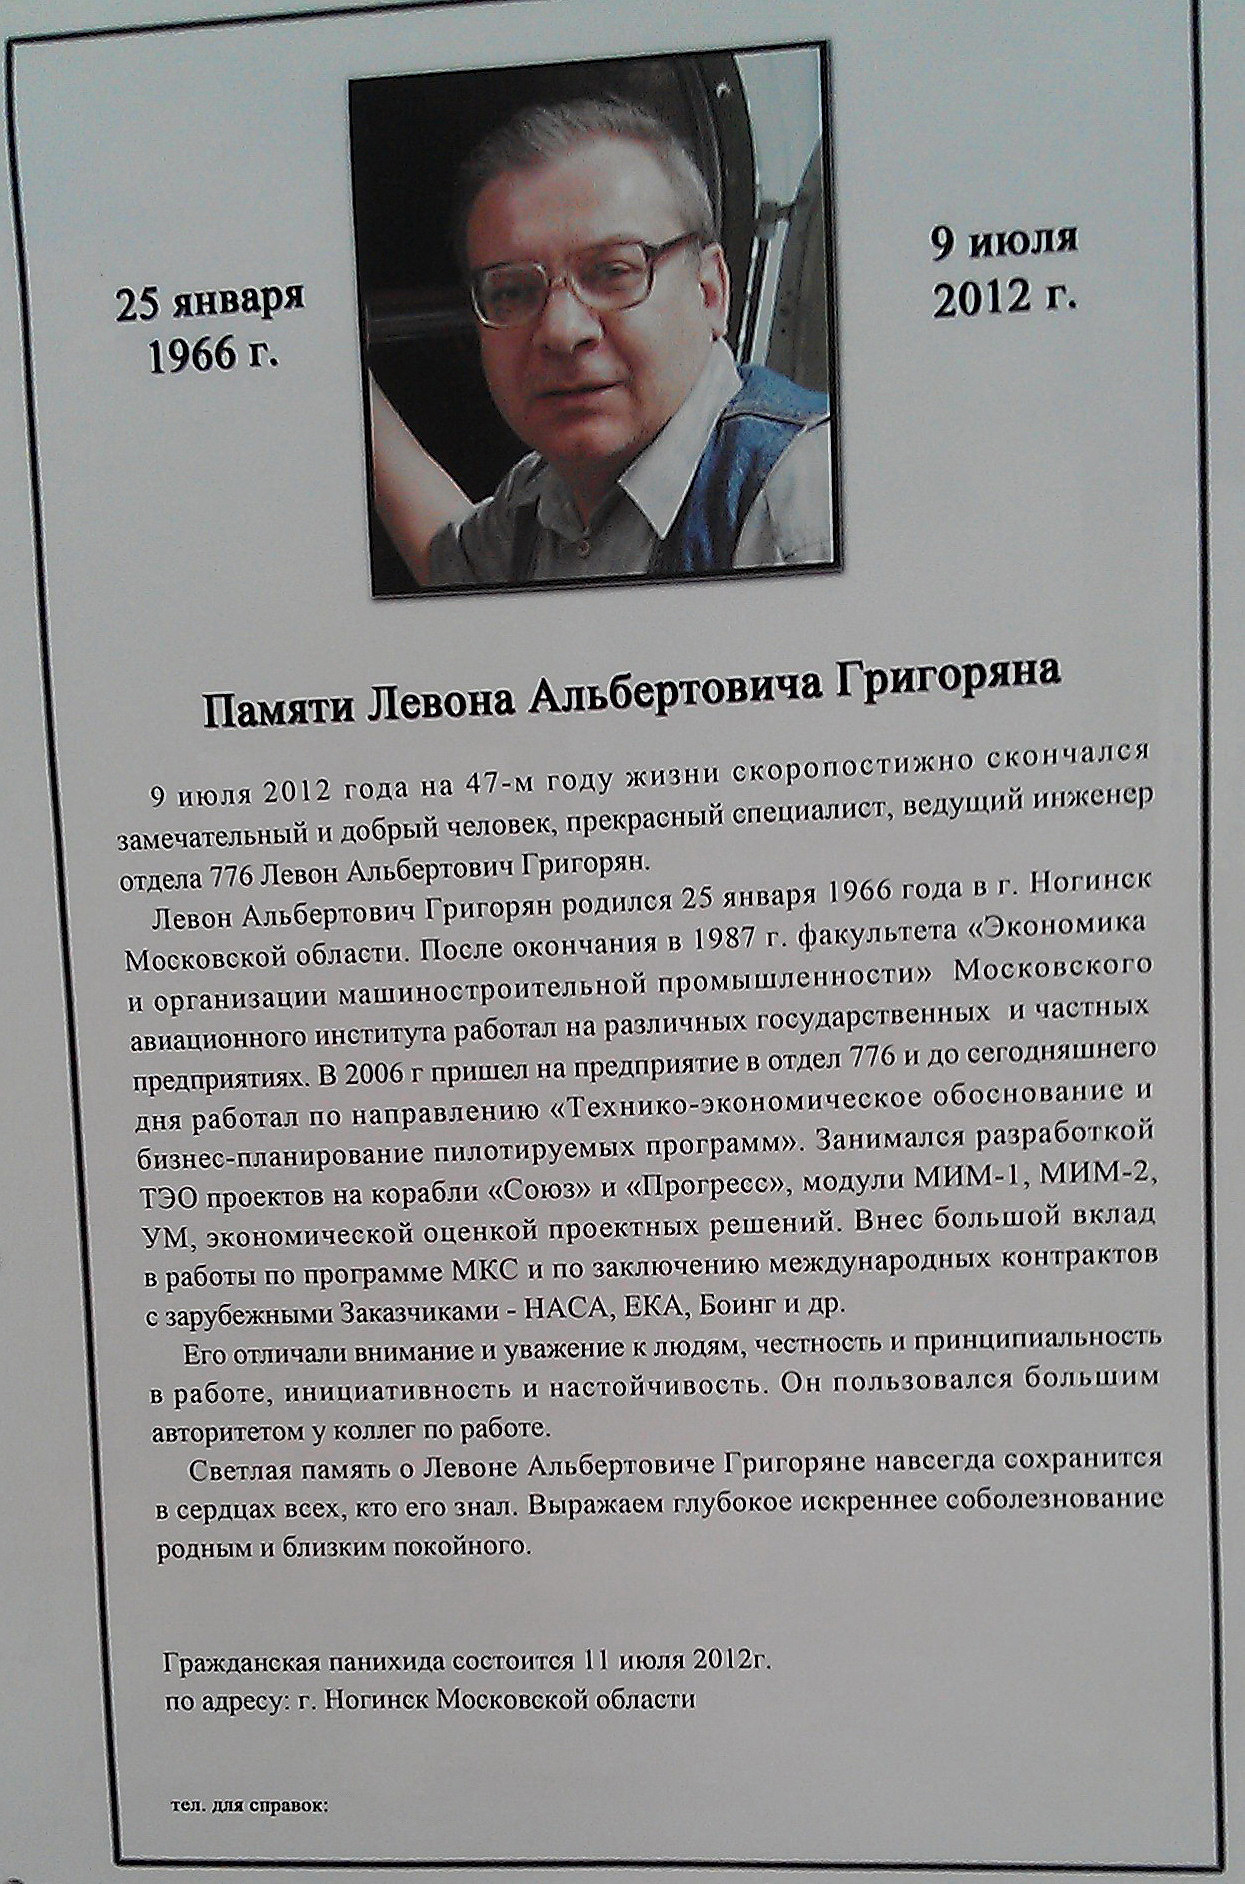 Некролог о смерти Л.А. Григоряна (фото из архива форума сайта журнала "Новости космонавтики")